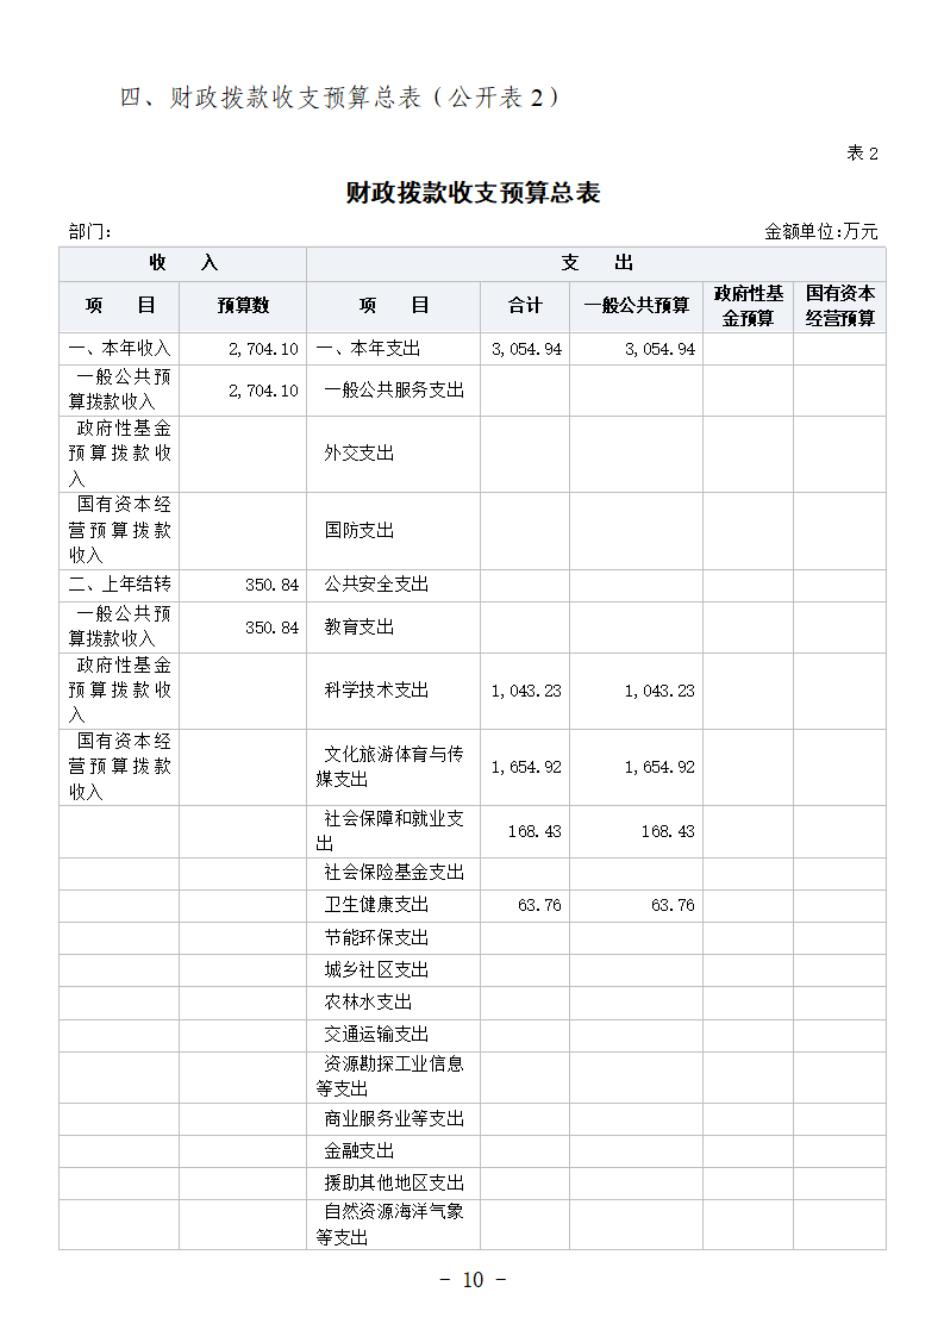 省考古院2024年四川省省级单位预算公开模板(3.14)_11.jpg